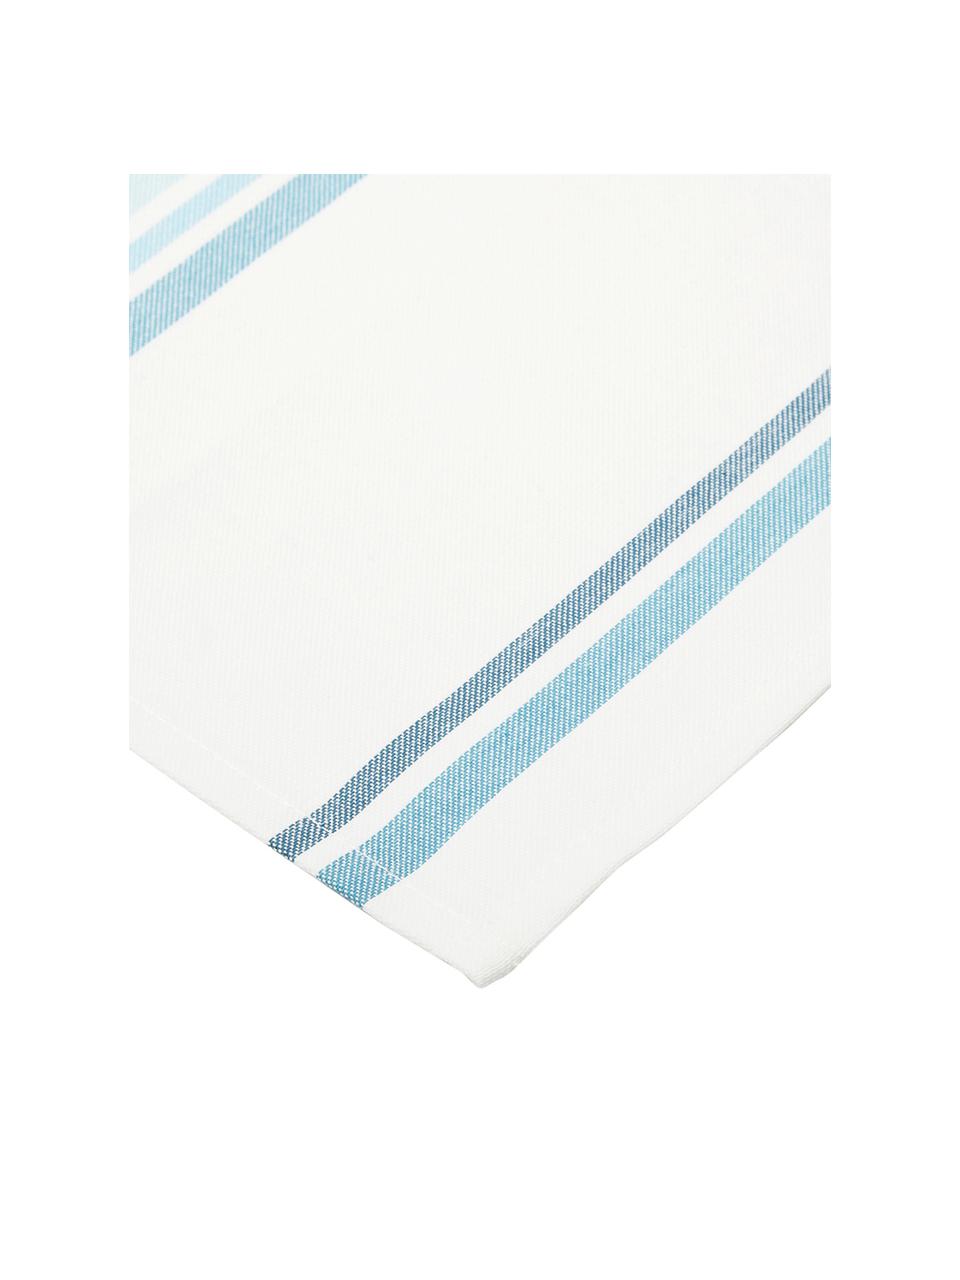 Tischsets Katie, 2 Stück, Baumwolle, Weiss, Blau, 40 x 50 cm